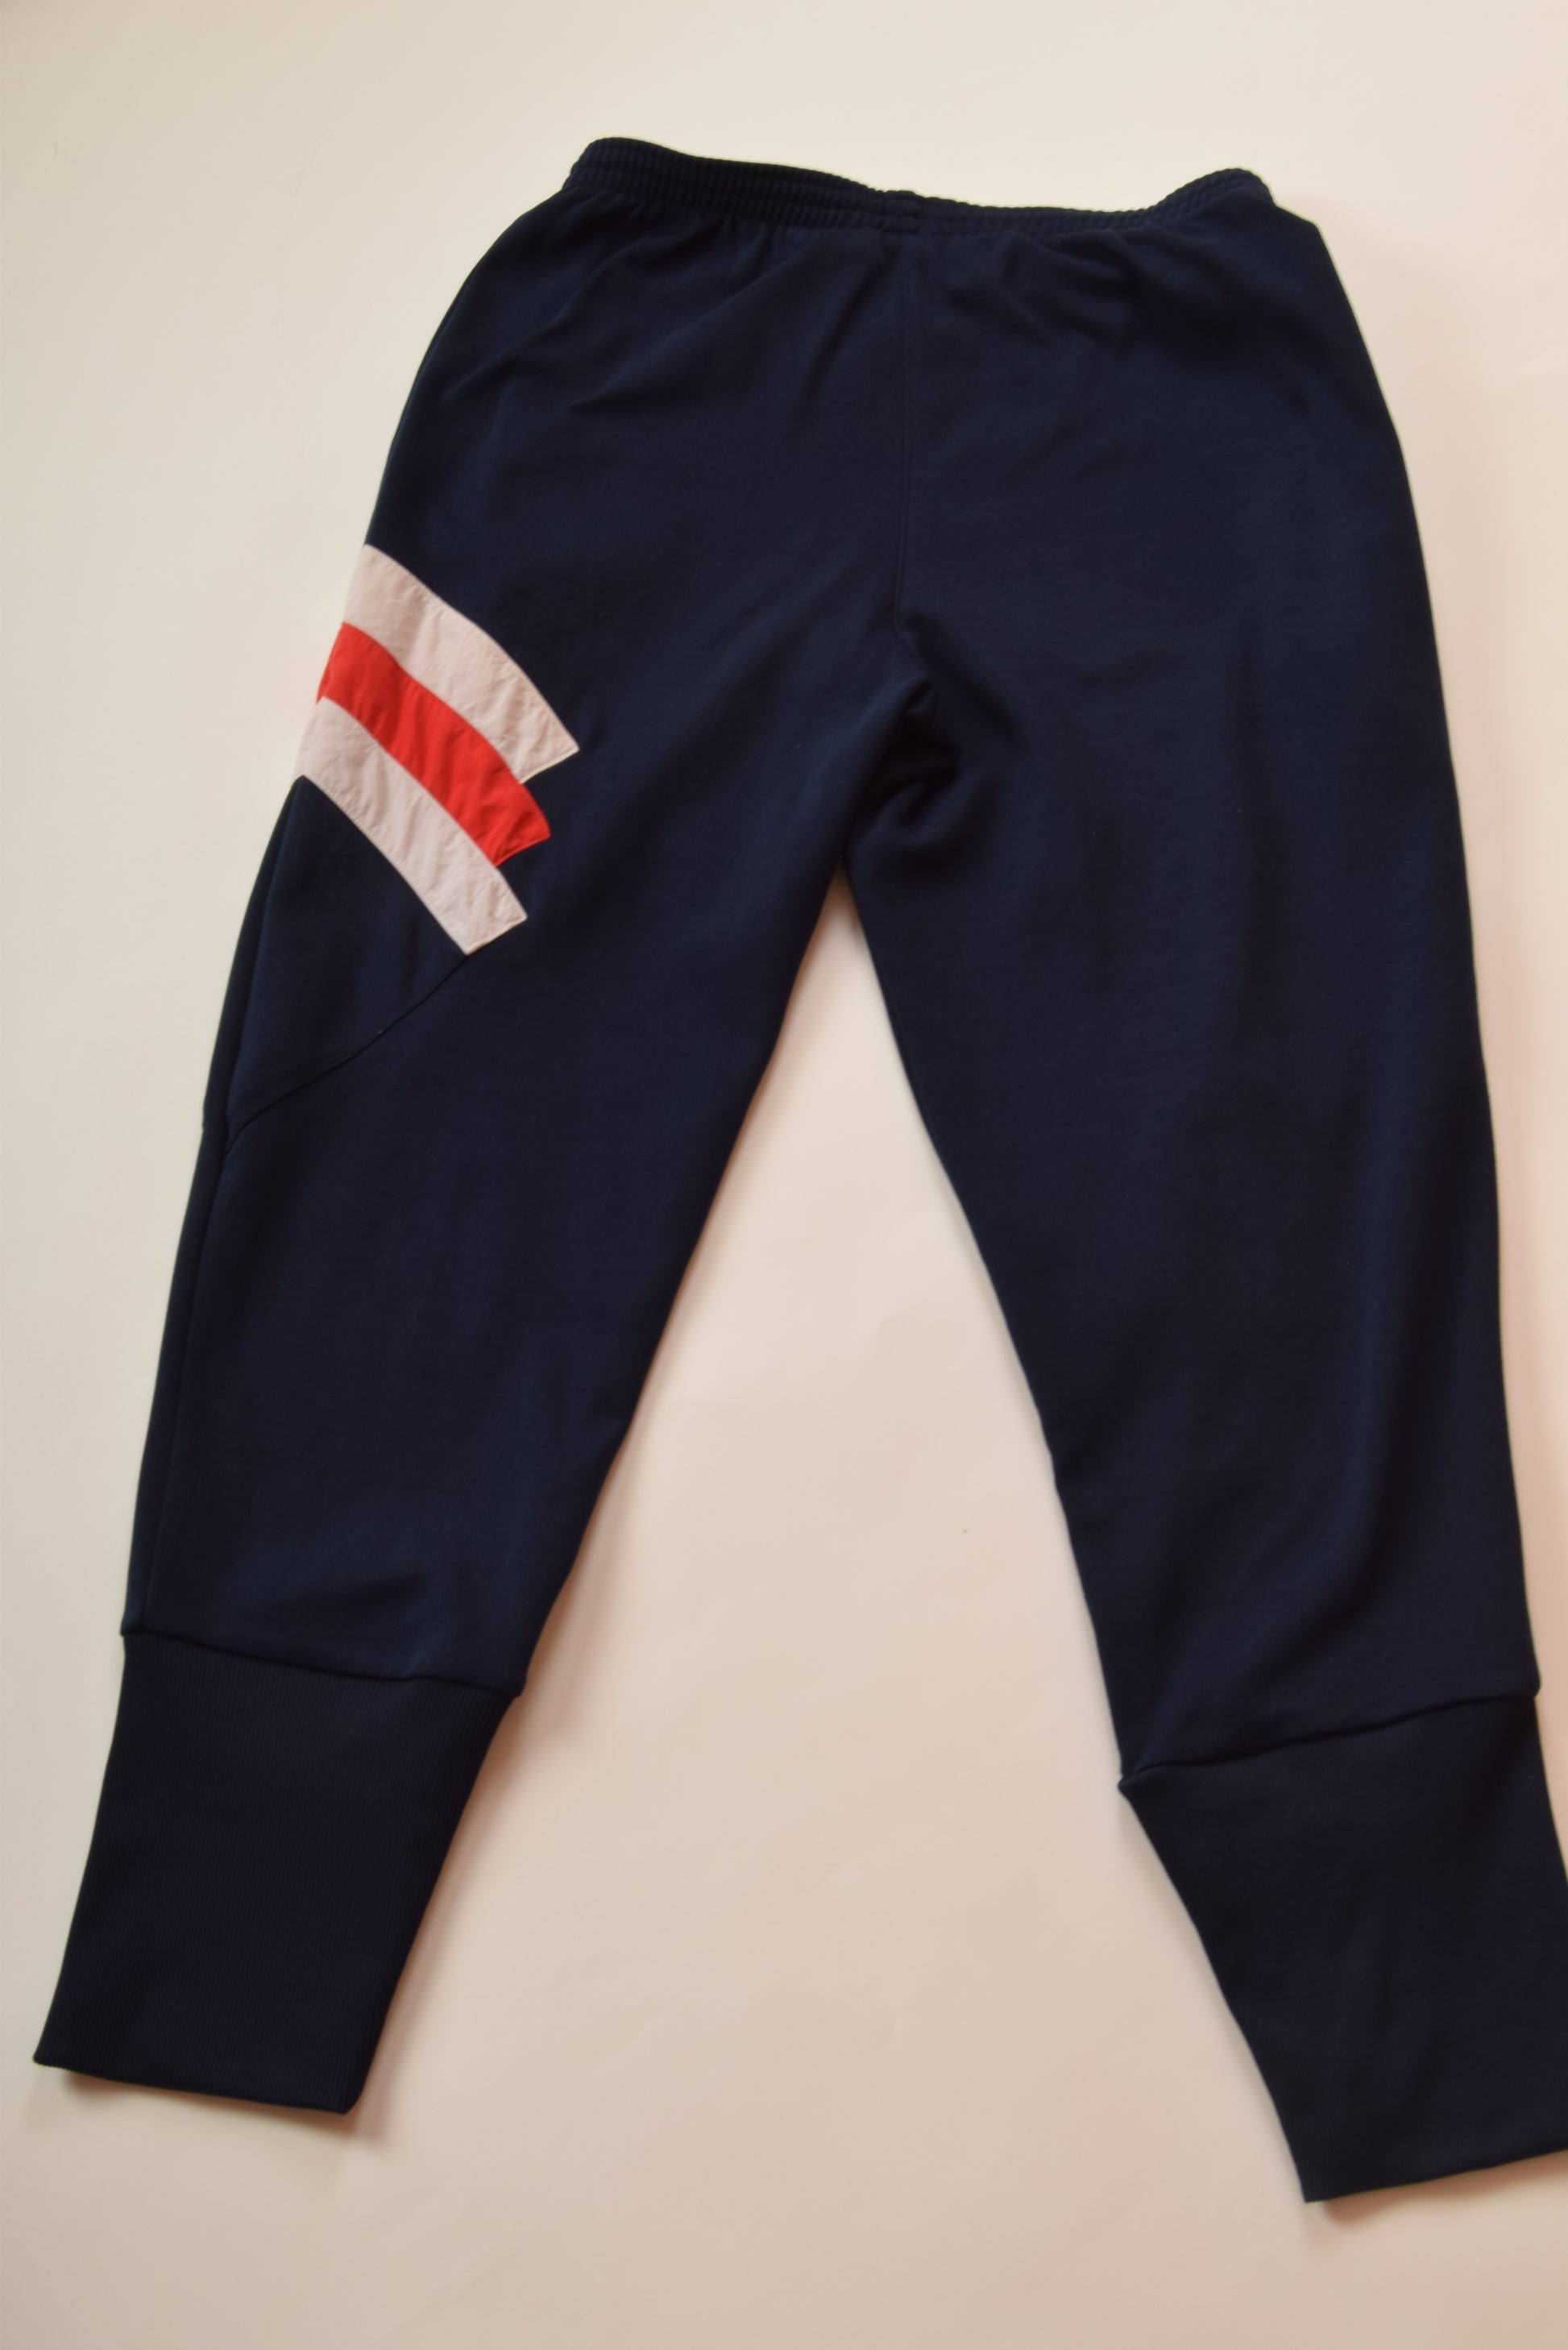 Adidas Originals mens vintage 90s Black Blue Tracksuit Track Pants size D7  (L)